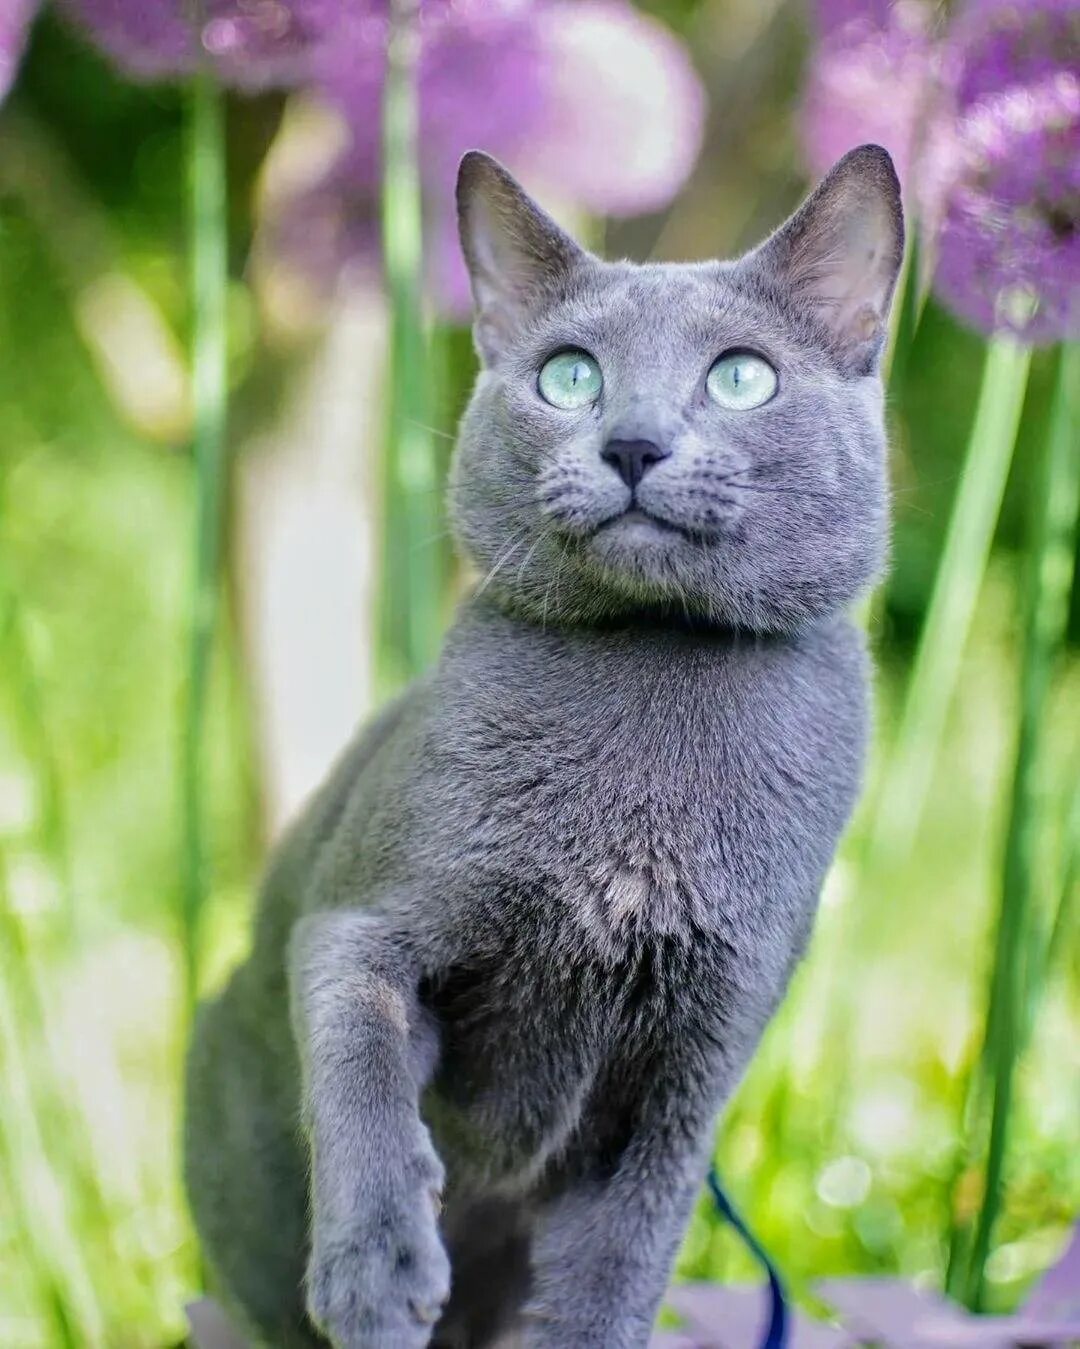 Сибирский голубая кошка короткошерстная. Картезианская кошка голубая. Кошка Сибирская голубая гладкошерстная. Среднерусская голубая кошка.